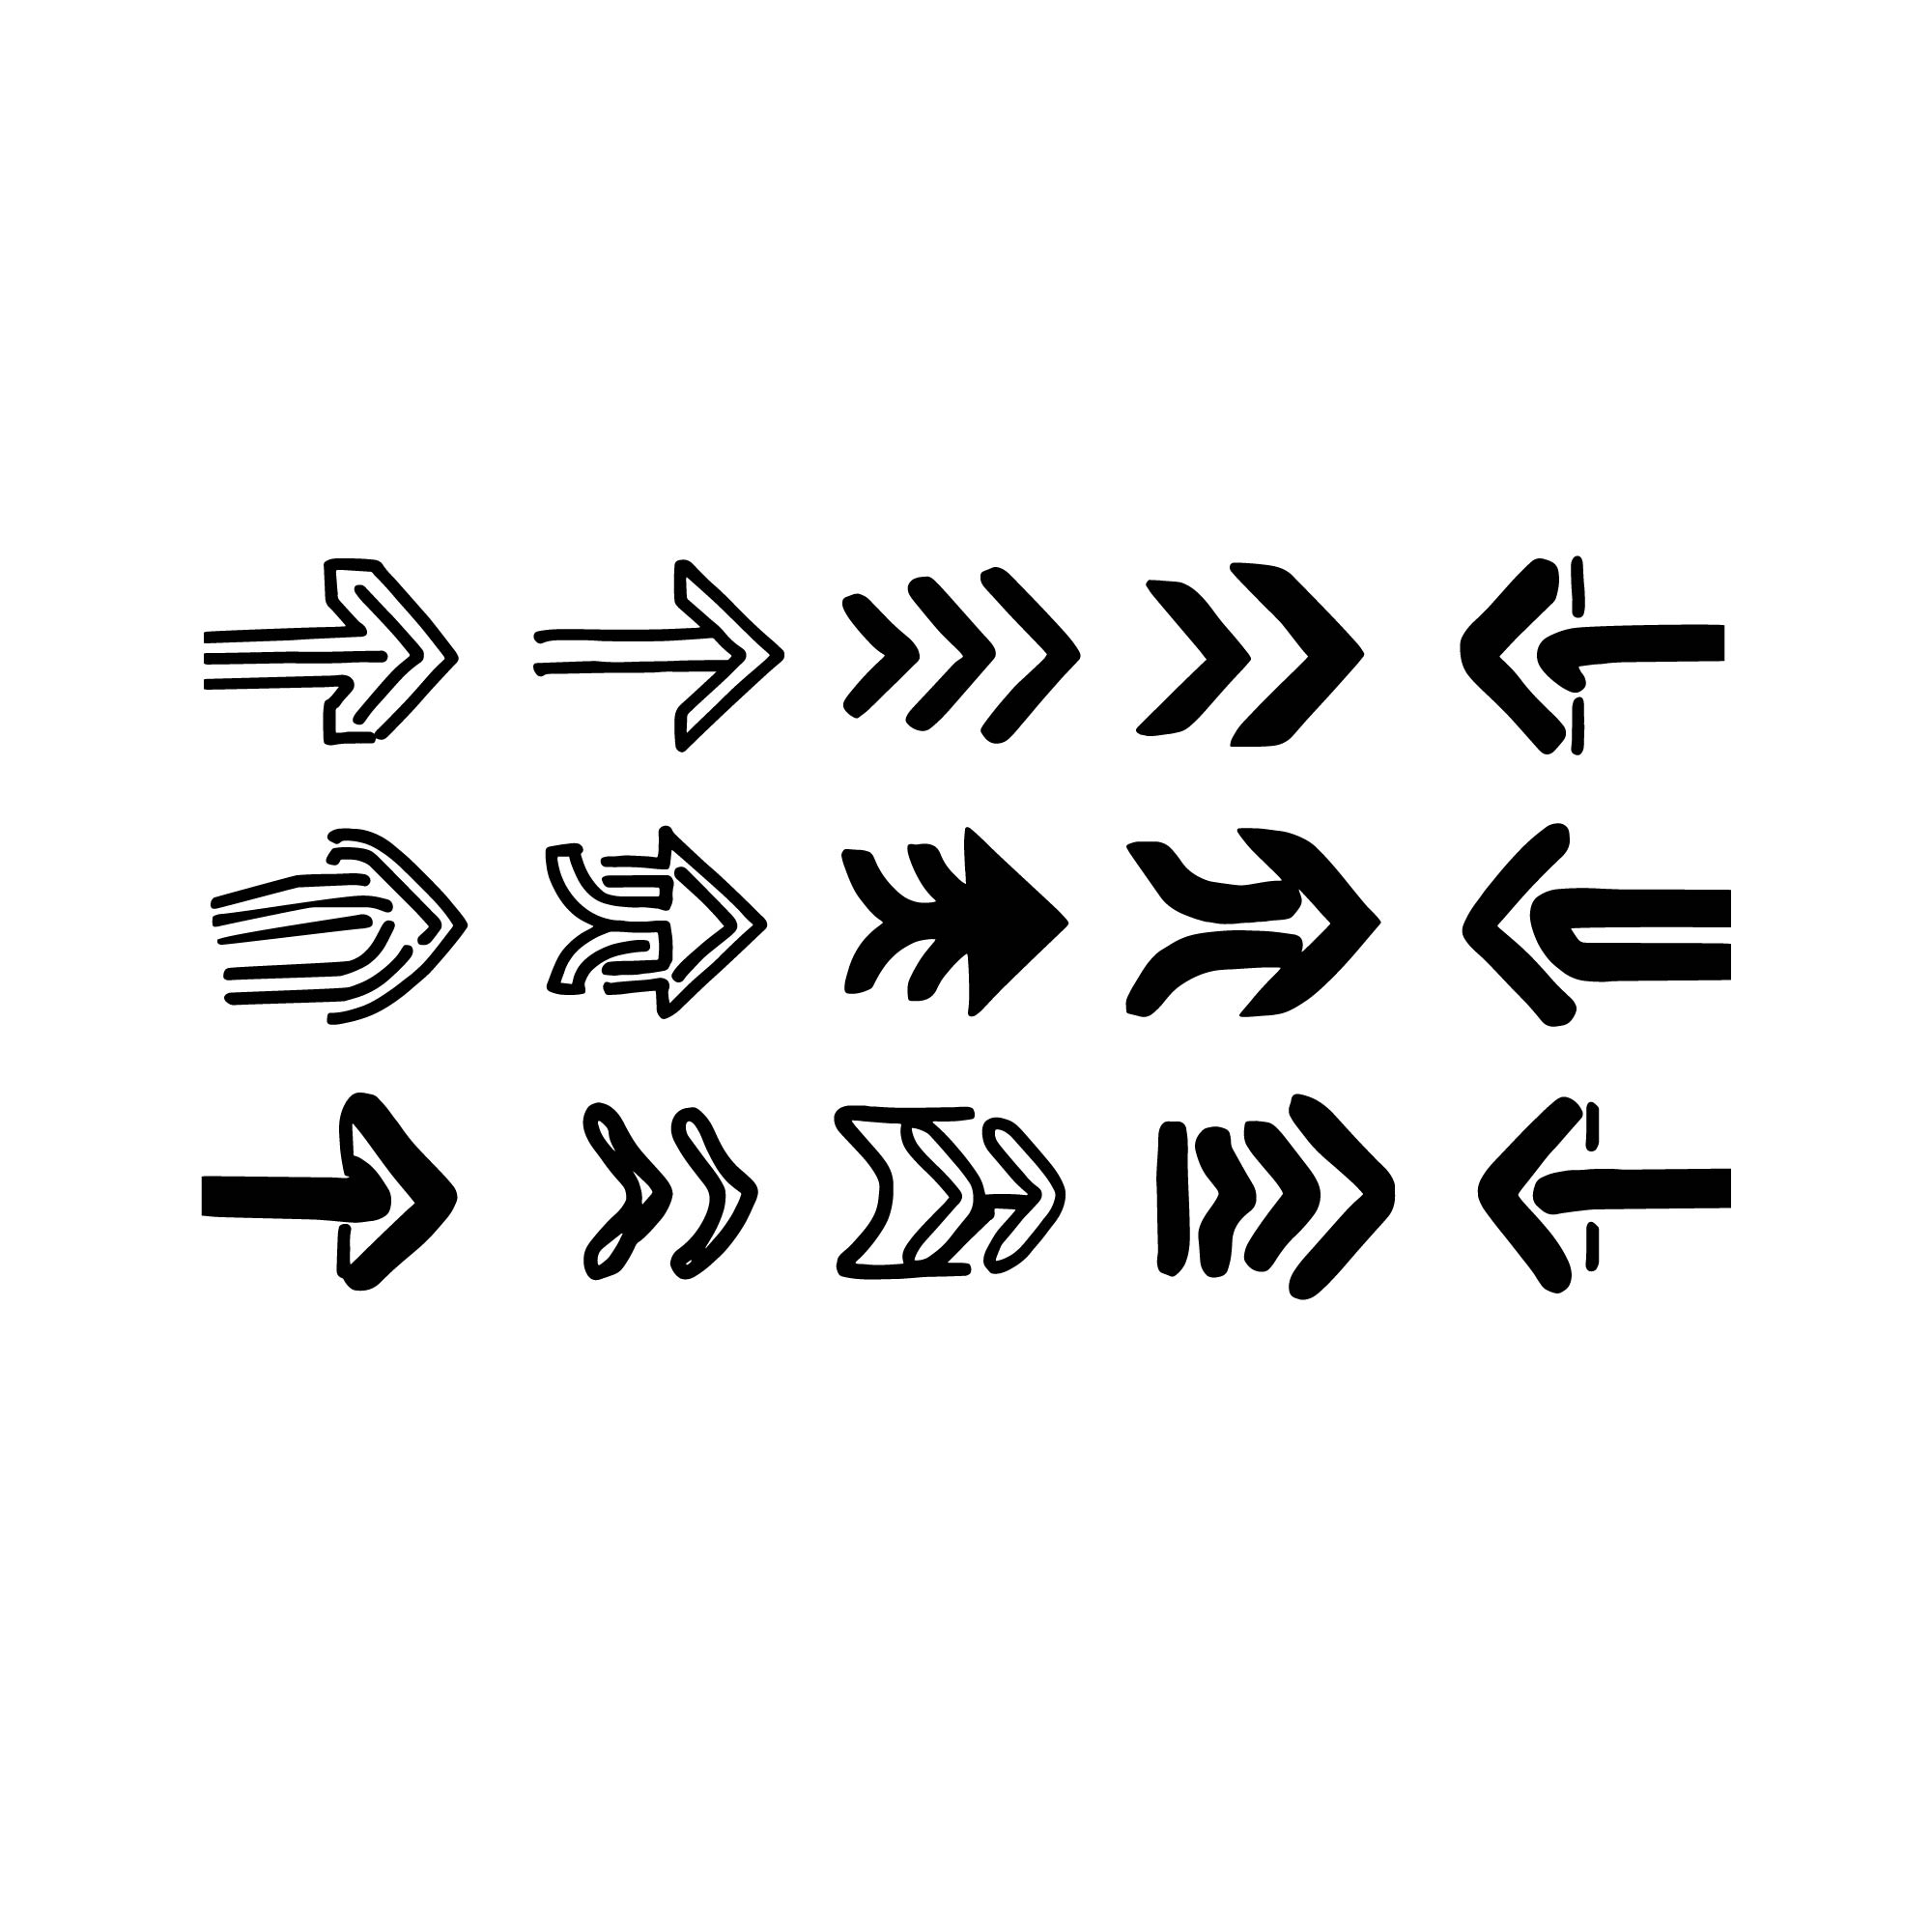 Bundle of Unique Arrow Icons cover image.